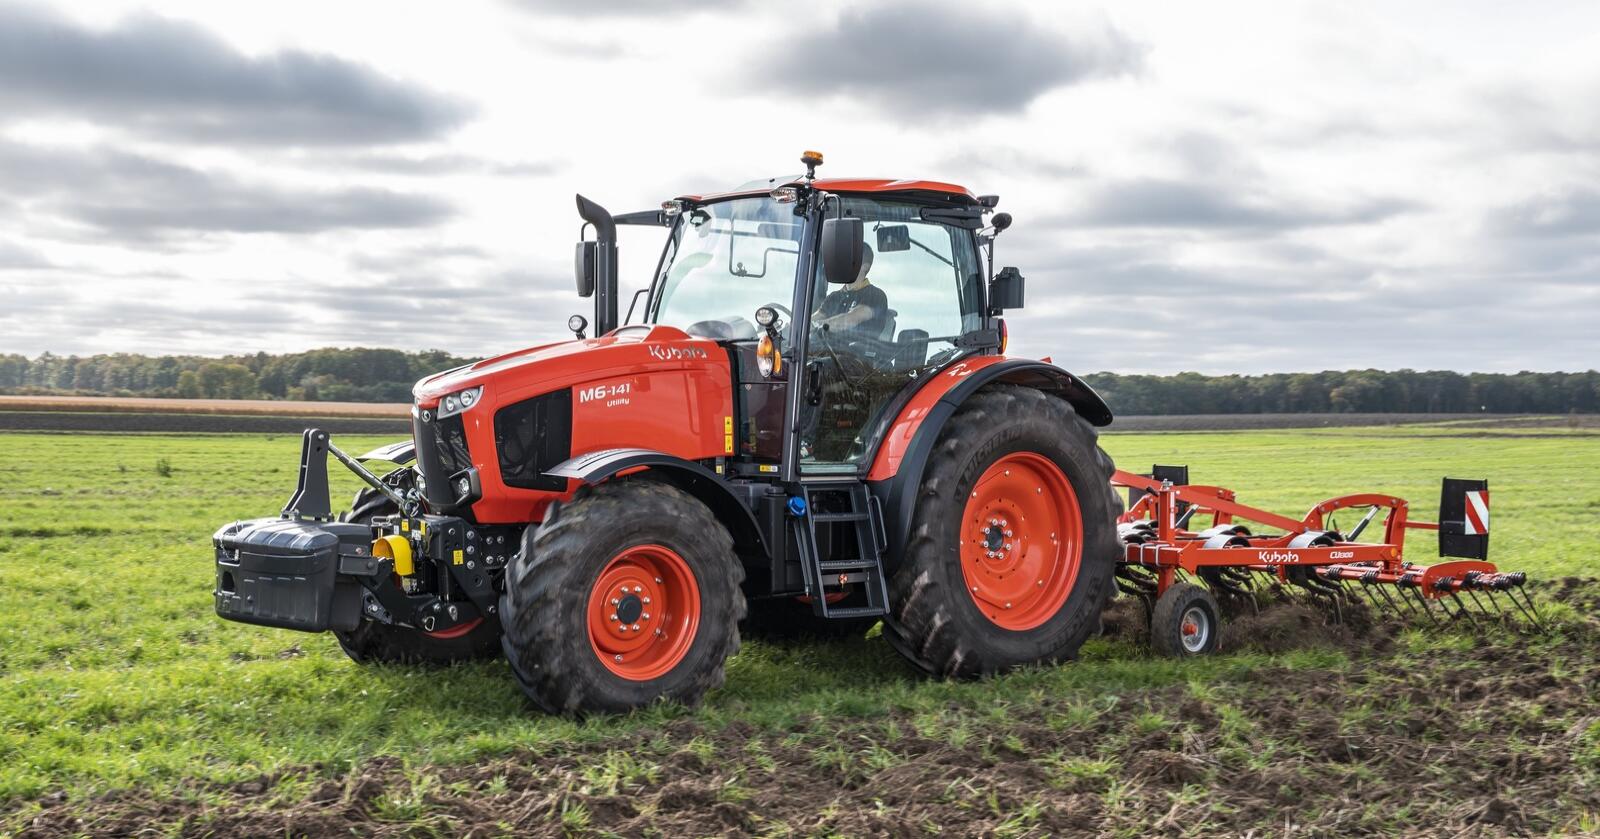 Nyhet: Nye M6001 er traktorserien for brukere som ønsker en lettere bygget traktor. Den tar over etter den tidligere serien MGX.